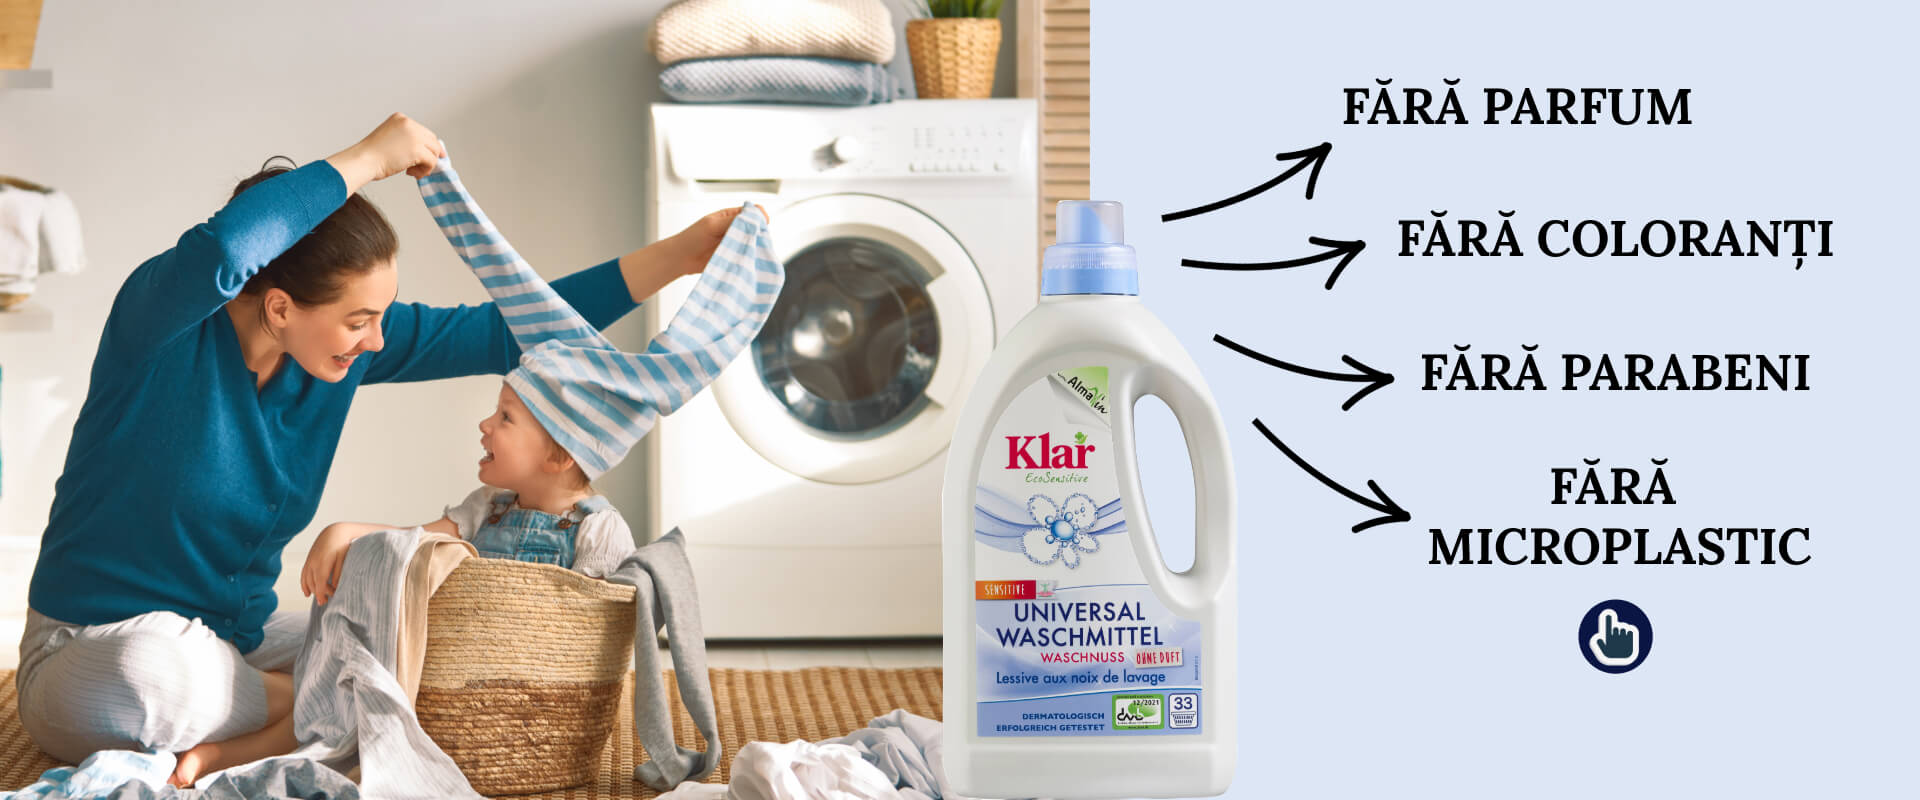 Gata cu alergiile! Iată detergentul ideal pentru pielea sensibilă!